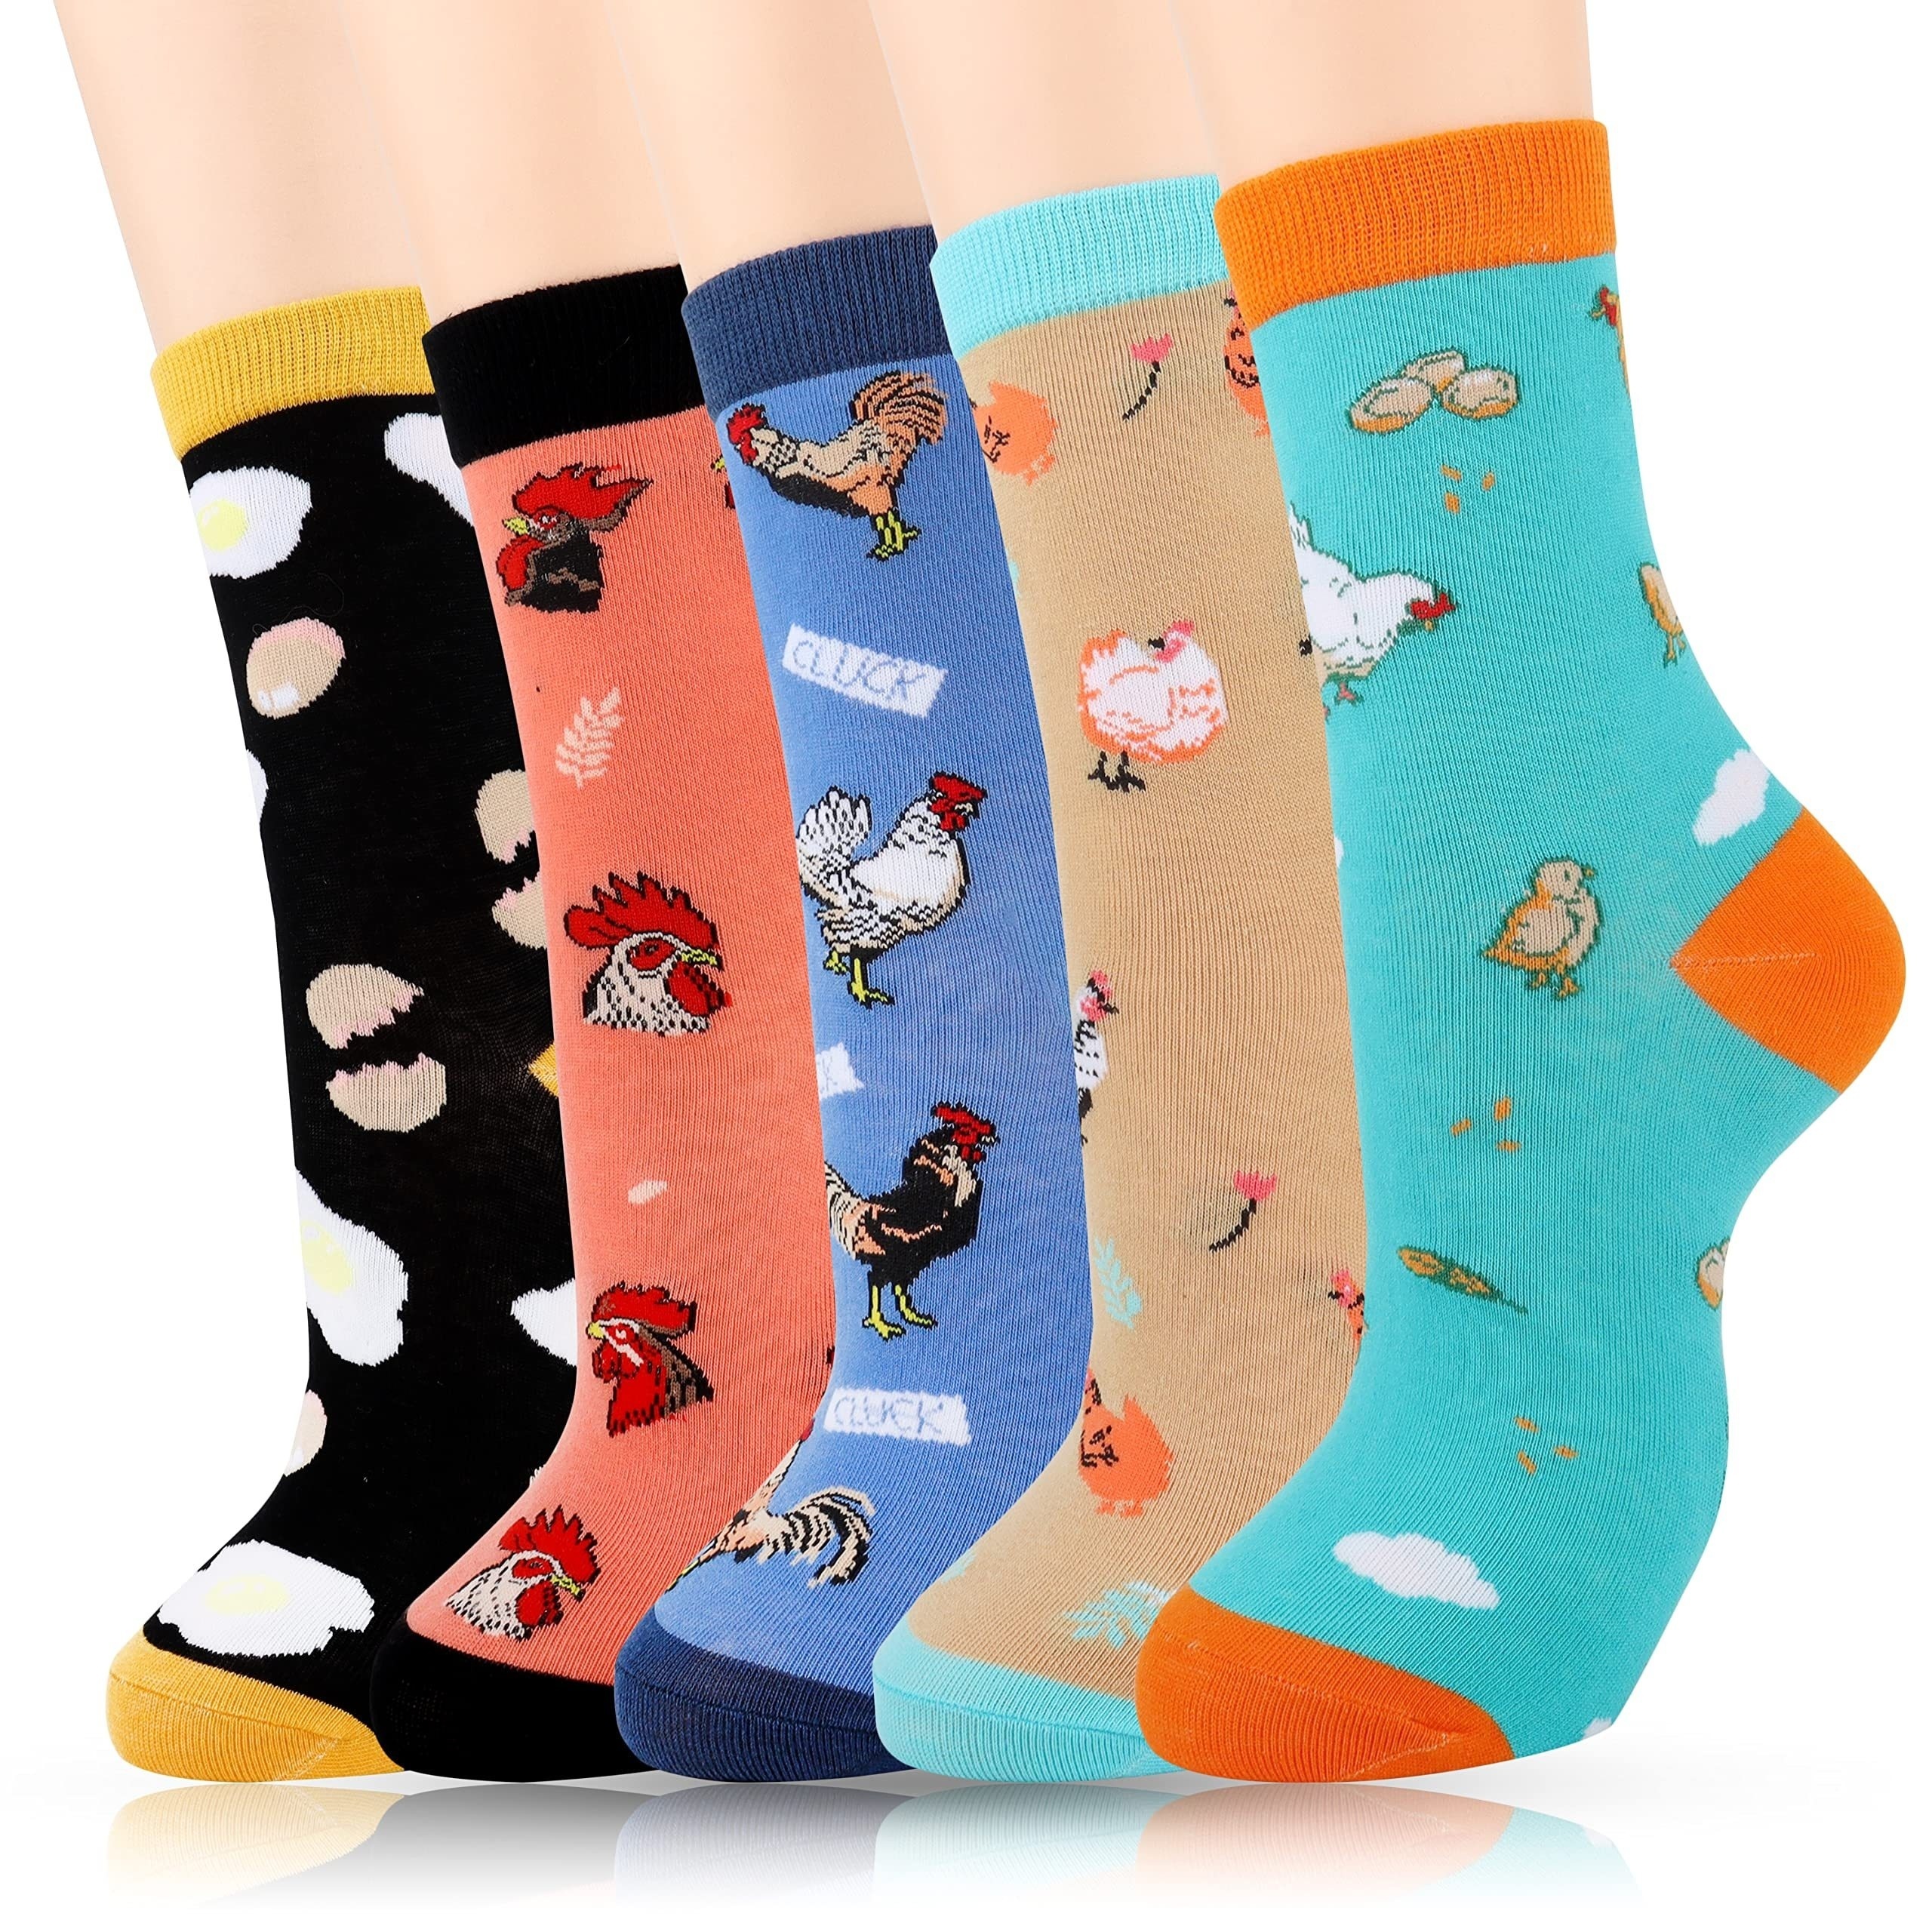 Avocado Socks Cute Socks for Women Funny Socks for Women Novelty Socks Funky